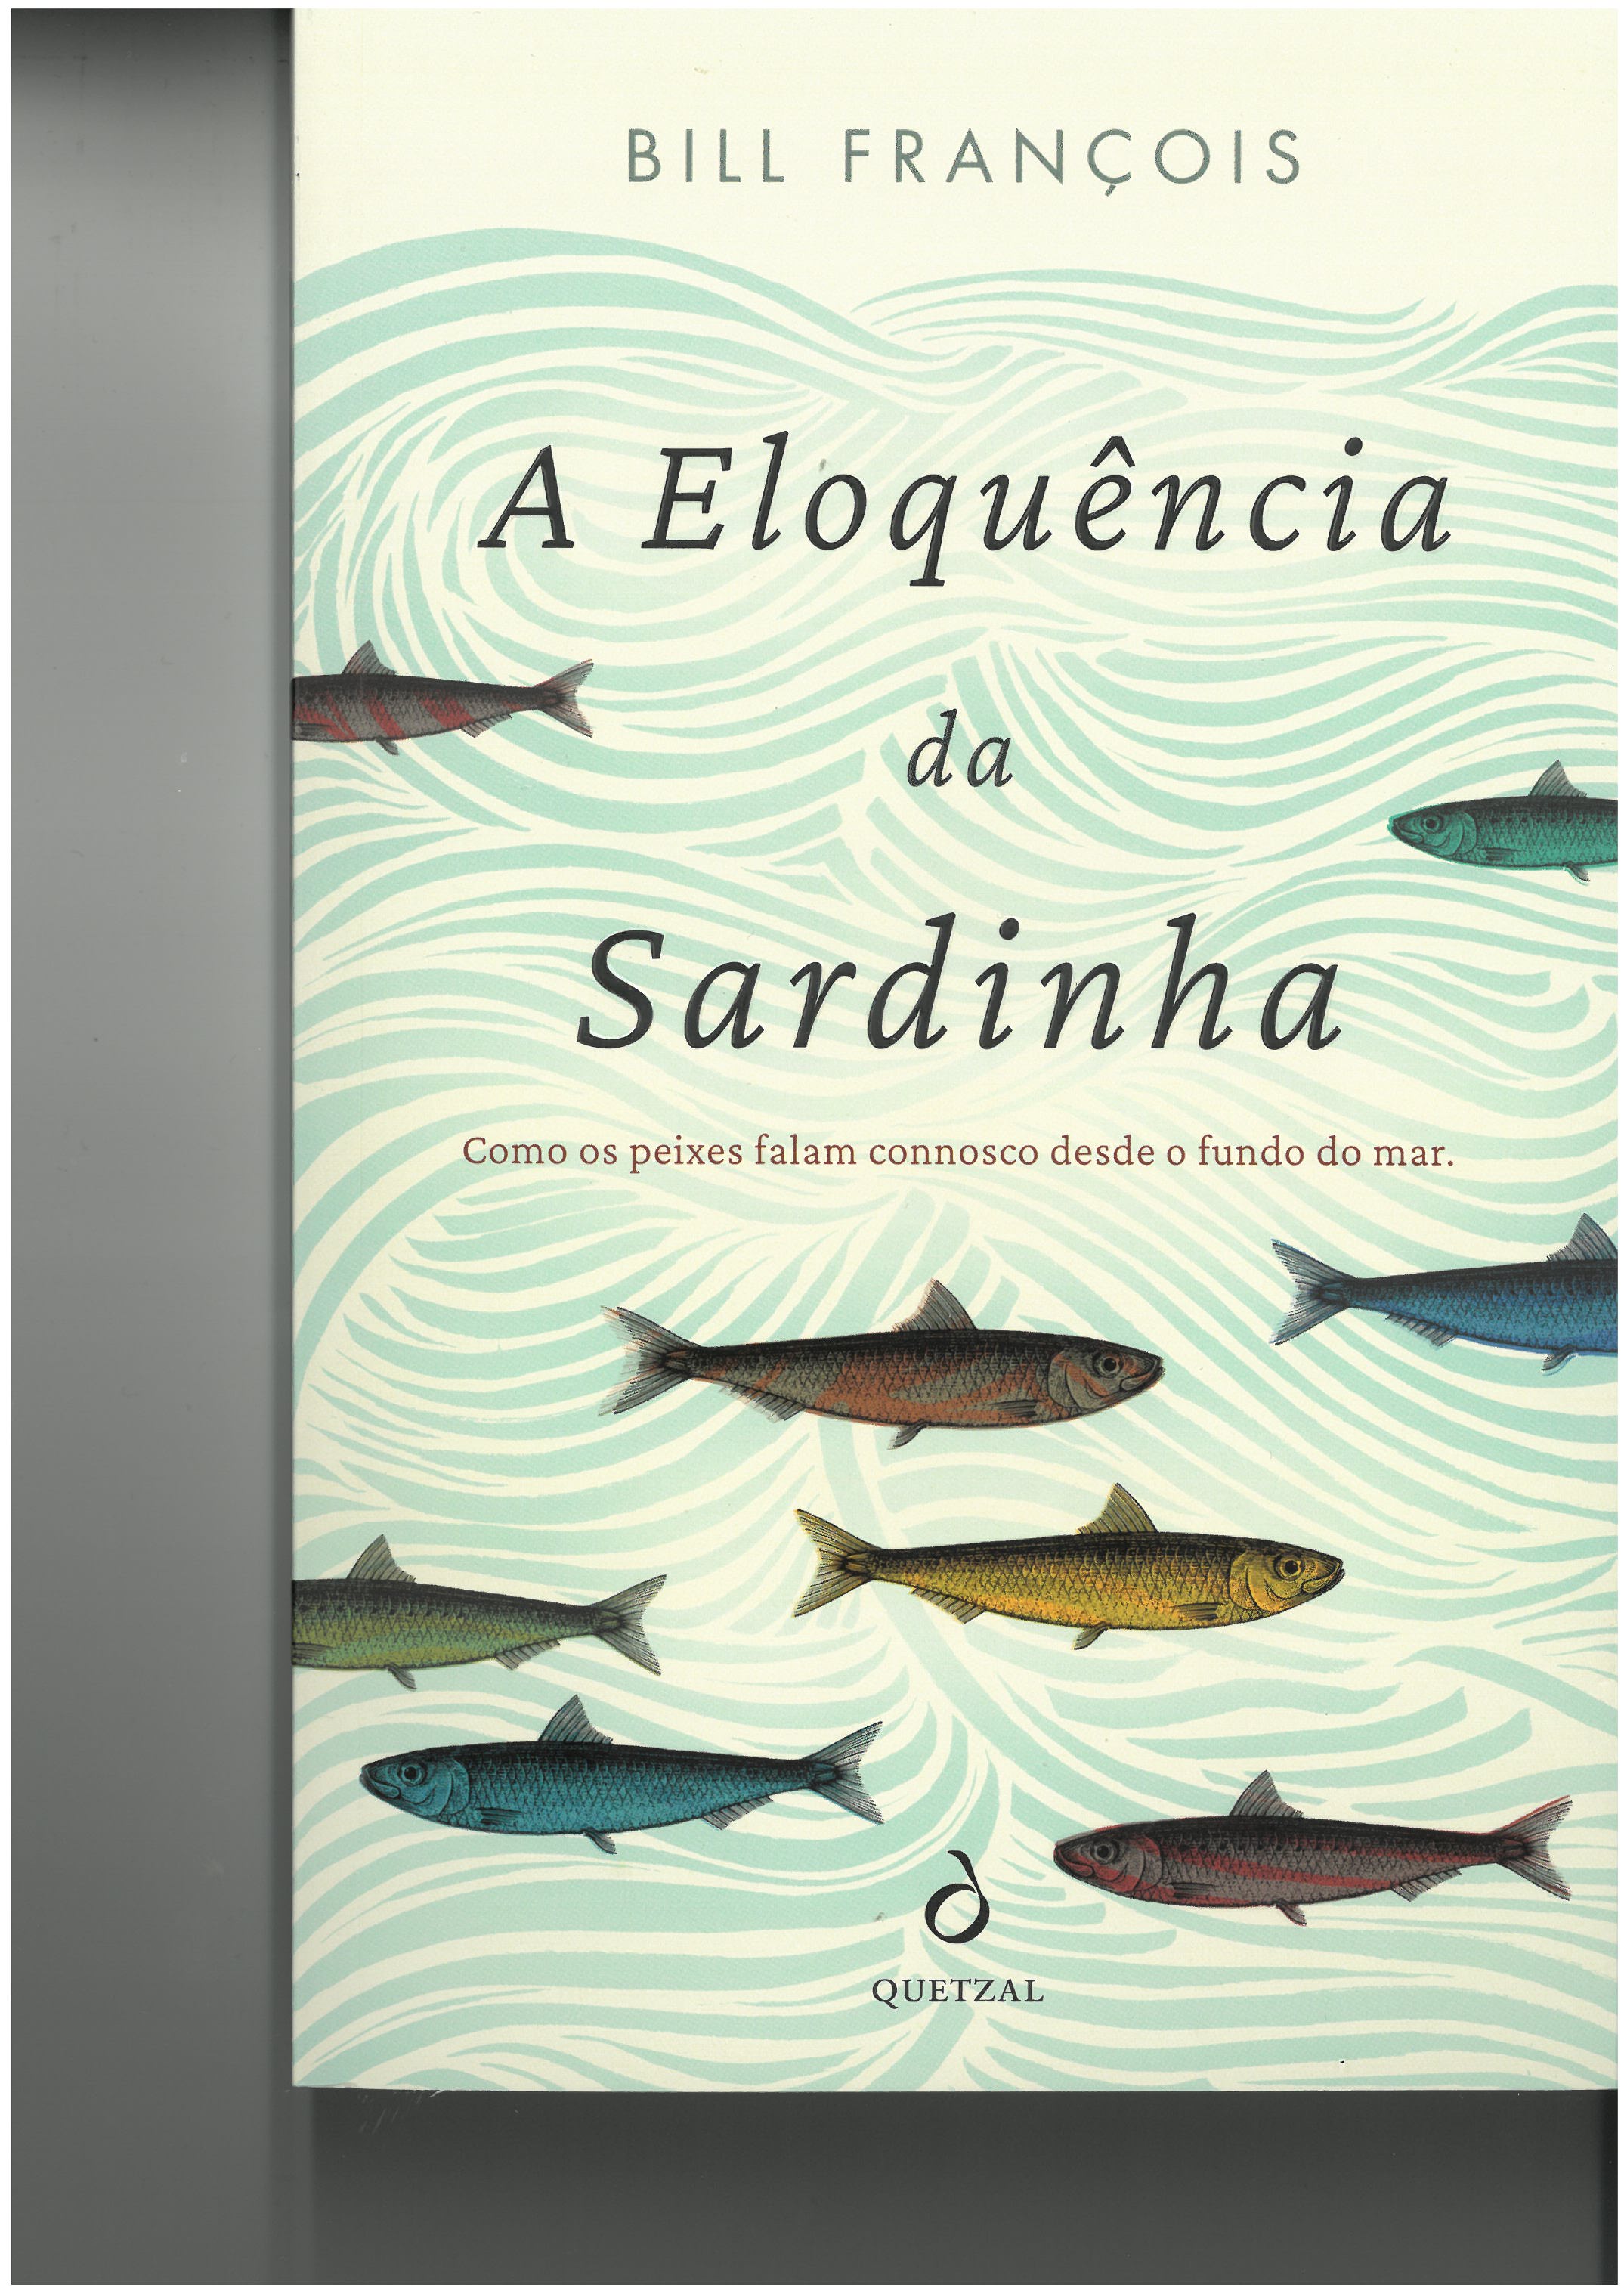 A Eloquência da Sardinha, Bill François - Quetzal Editores